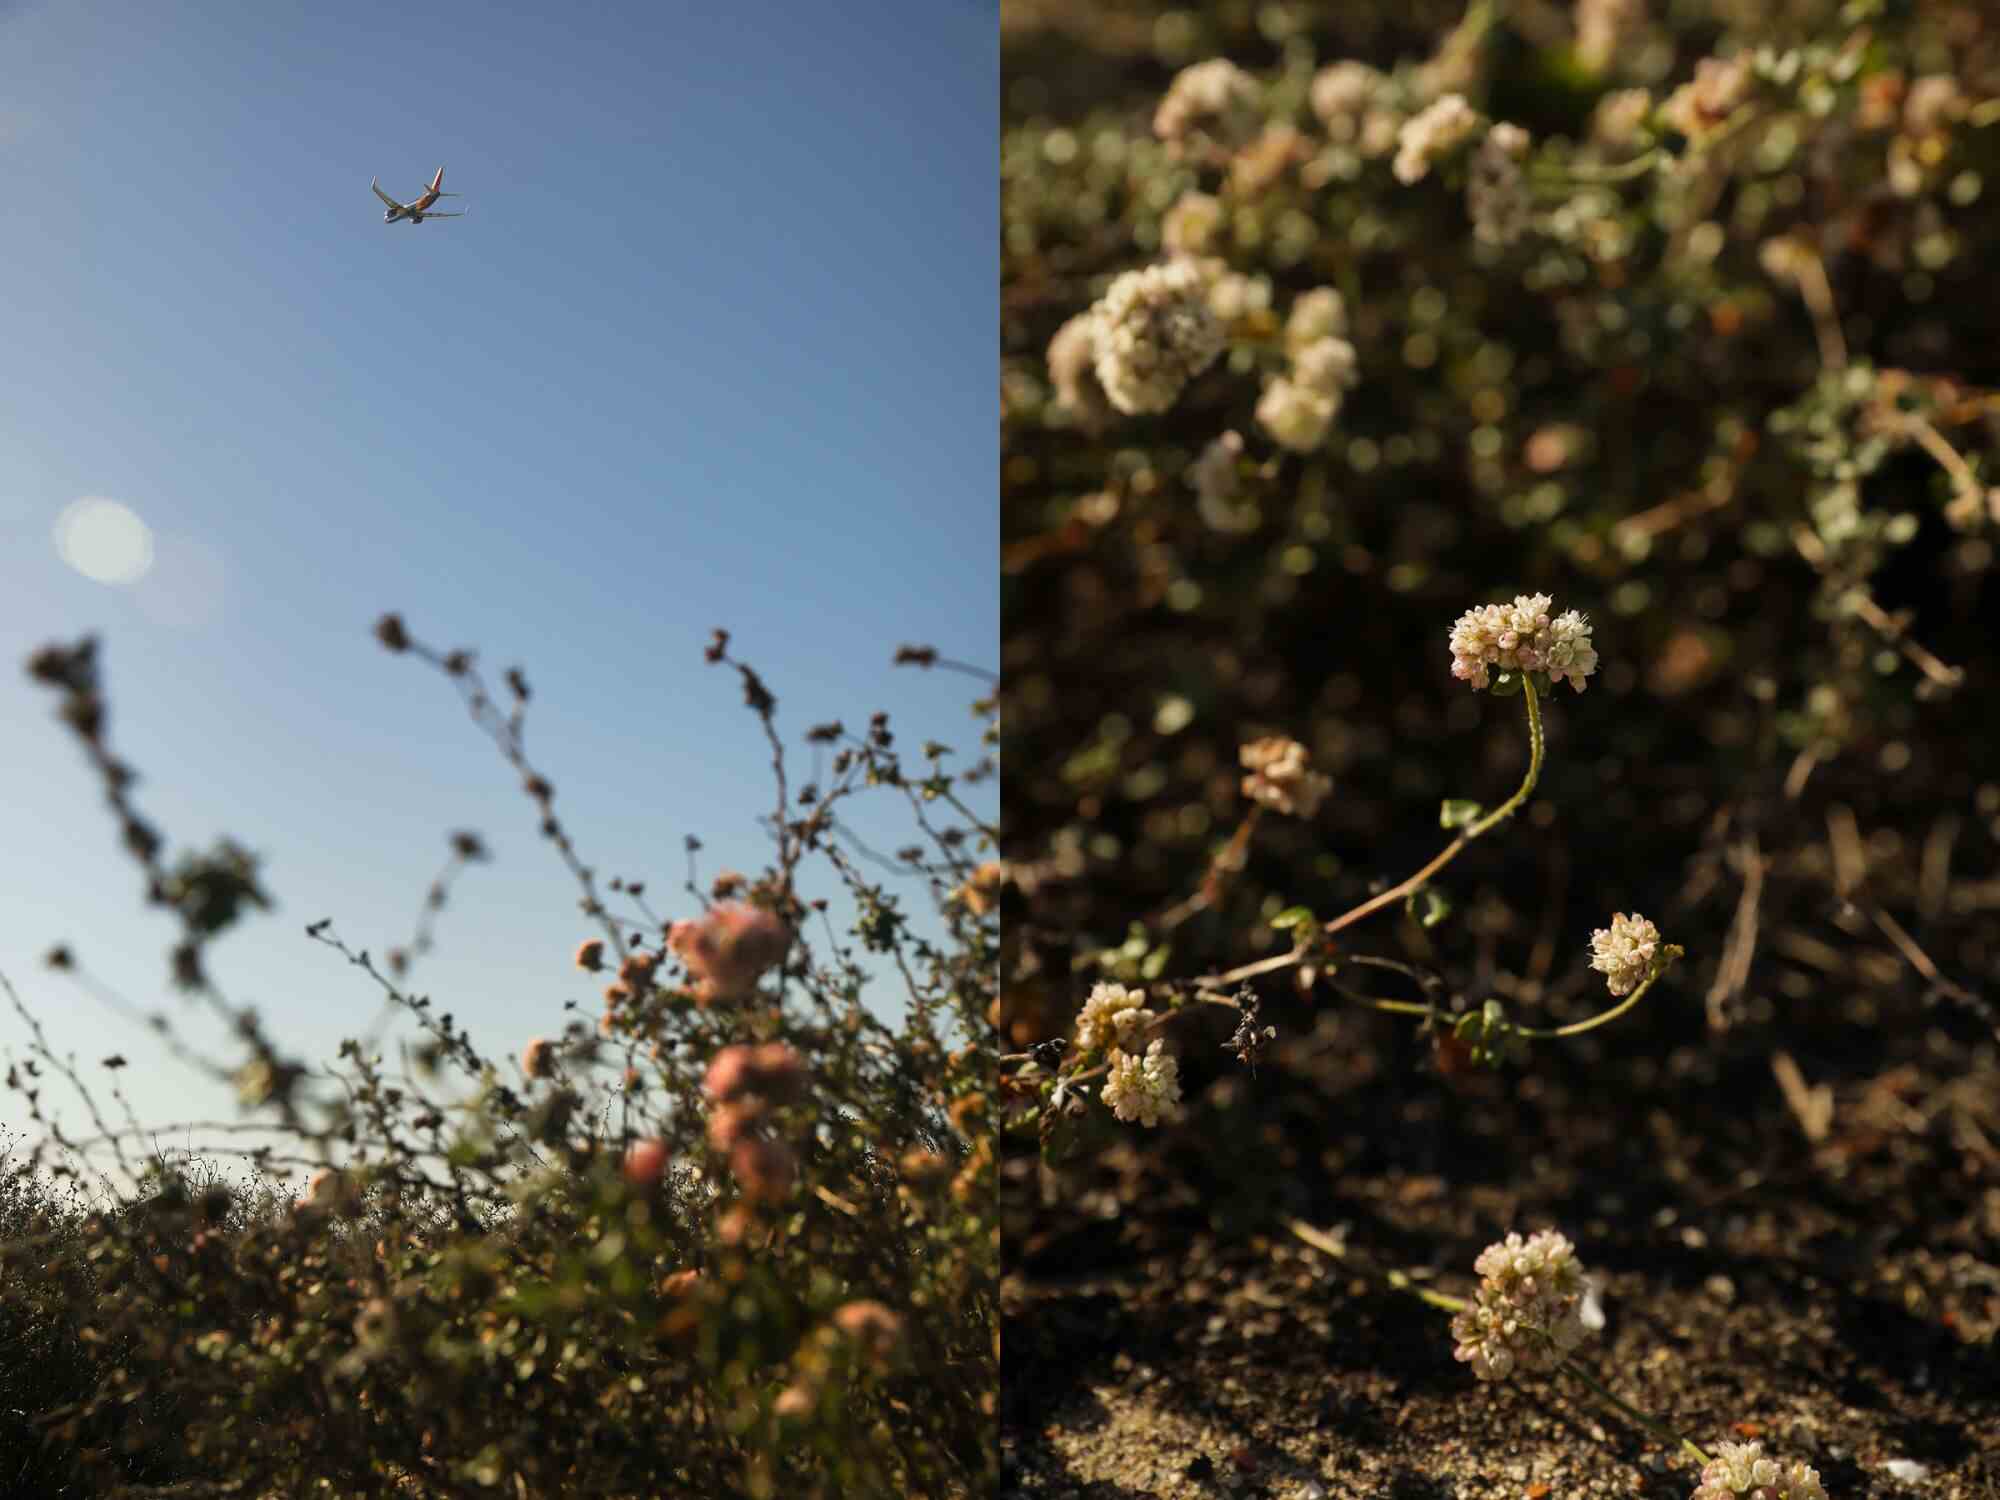 Zwei Fotos nebeneinander, eines von einem Flugzeug hoch am Himmel über einigen Büschen, das andere von Blumen auf Büschen.